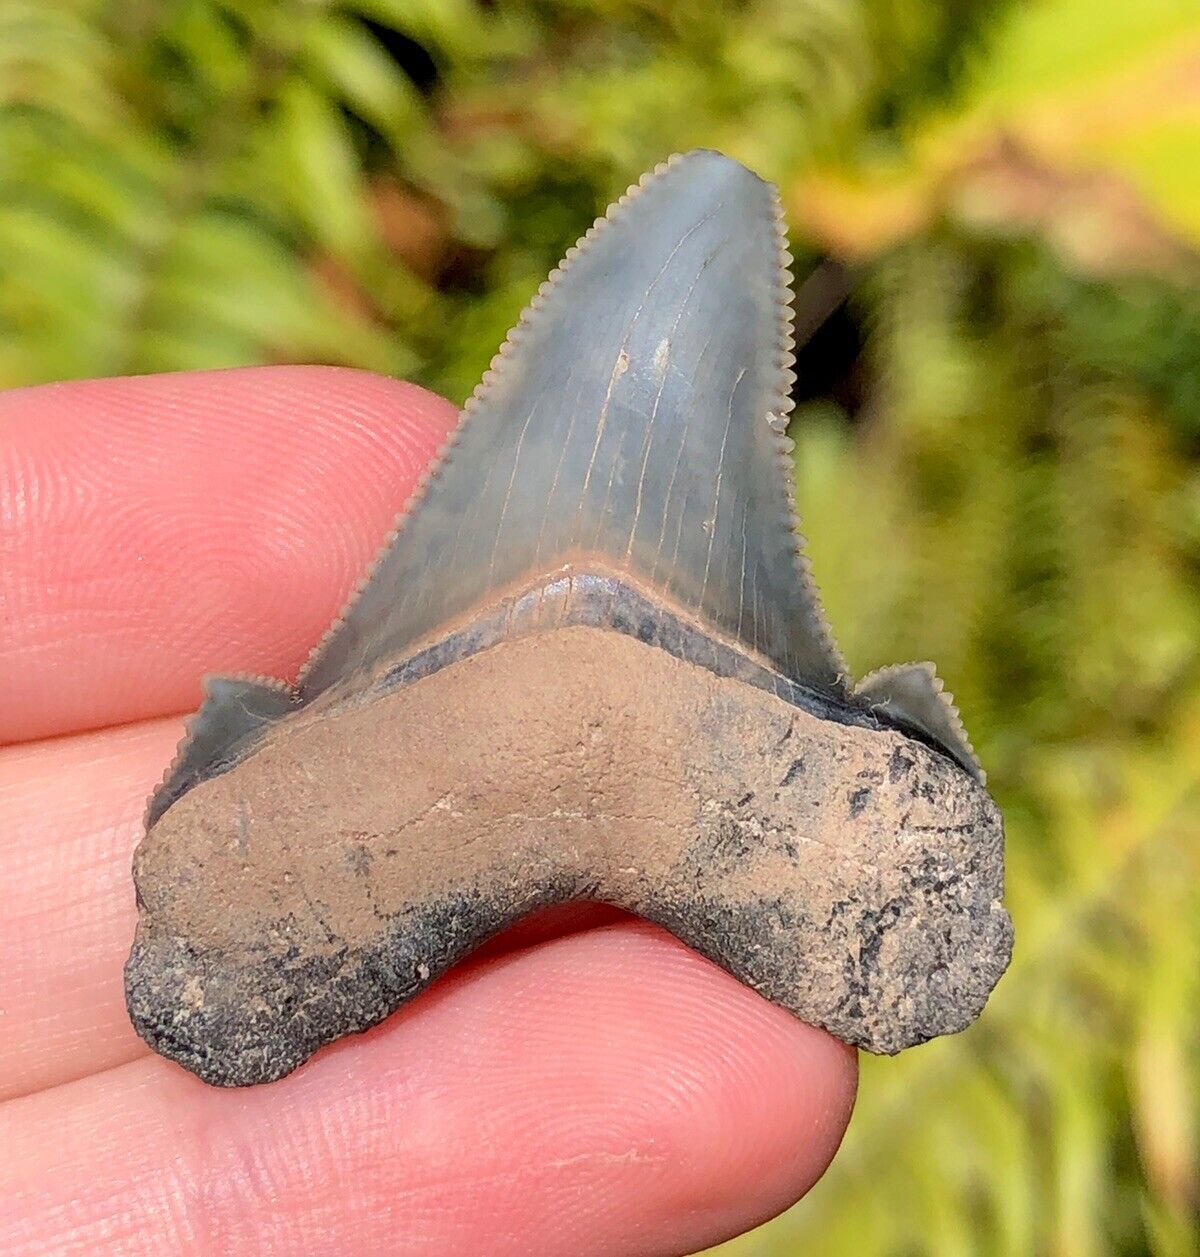 Summerville Angustidens Shark Tooth Fossil Sharks Teeth South Carolina